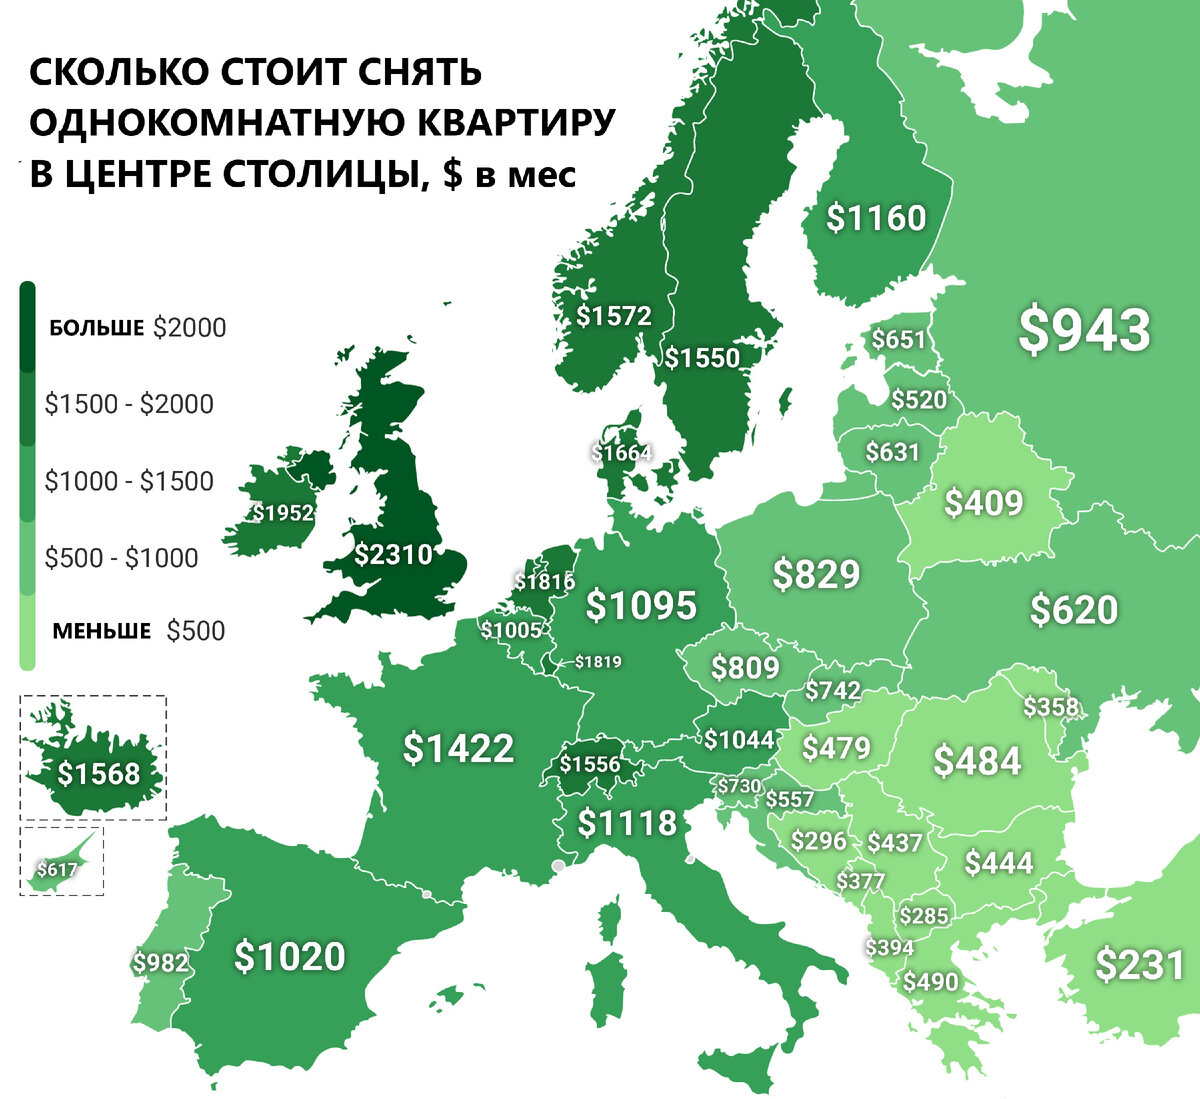 Цена аренды однокомнатной квартиры в Европейских столицах. источник:Яндекс.Картинки